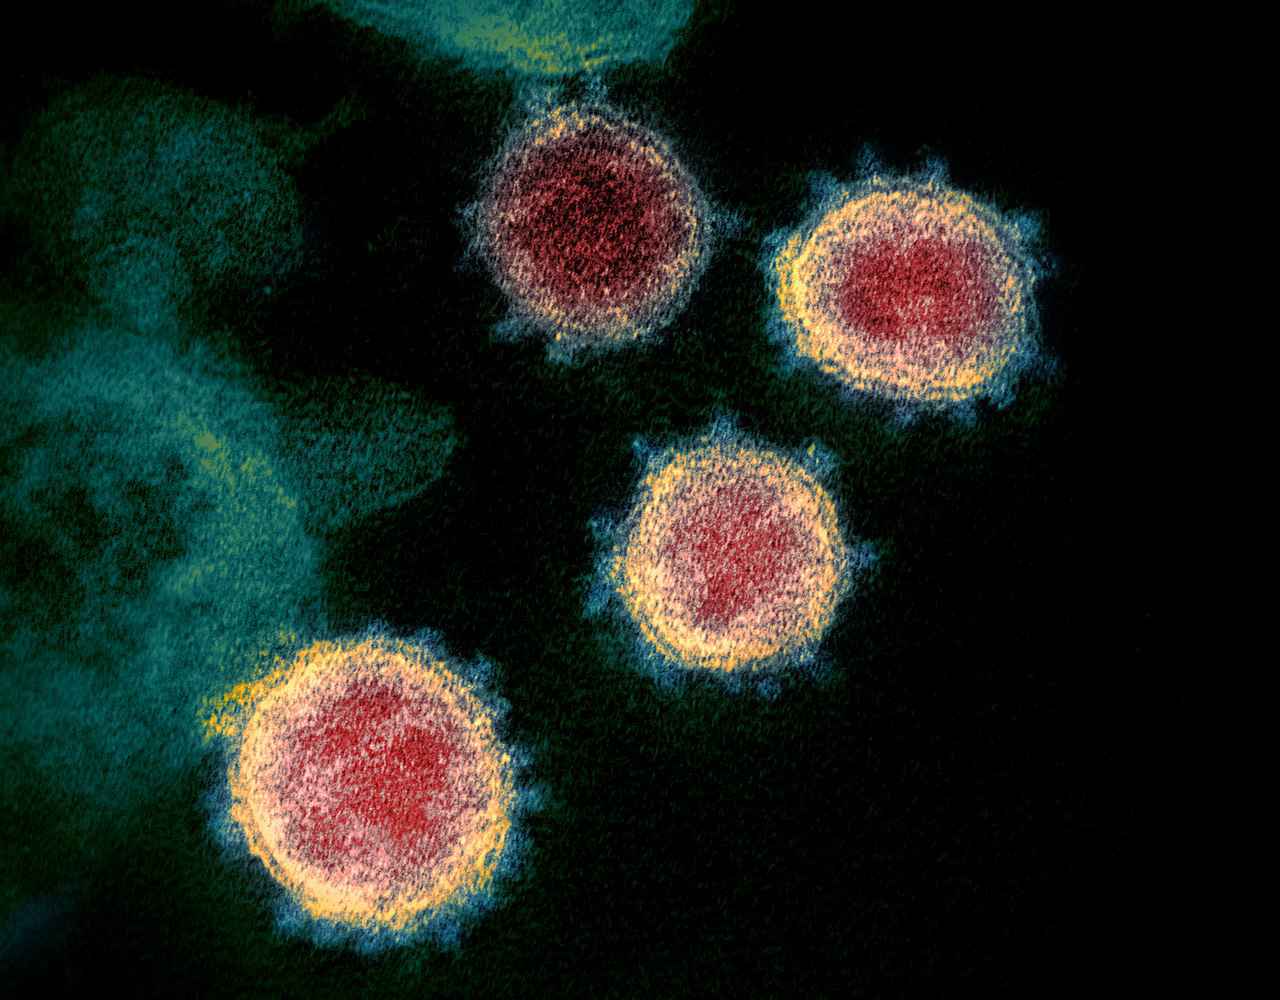 Imagem do Sars-CoV-2, o novo coronavírus, obtida por microscópio eletrônico de varredura